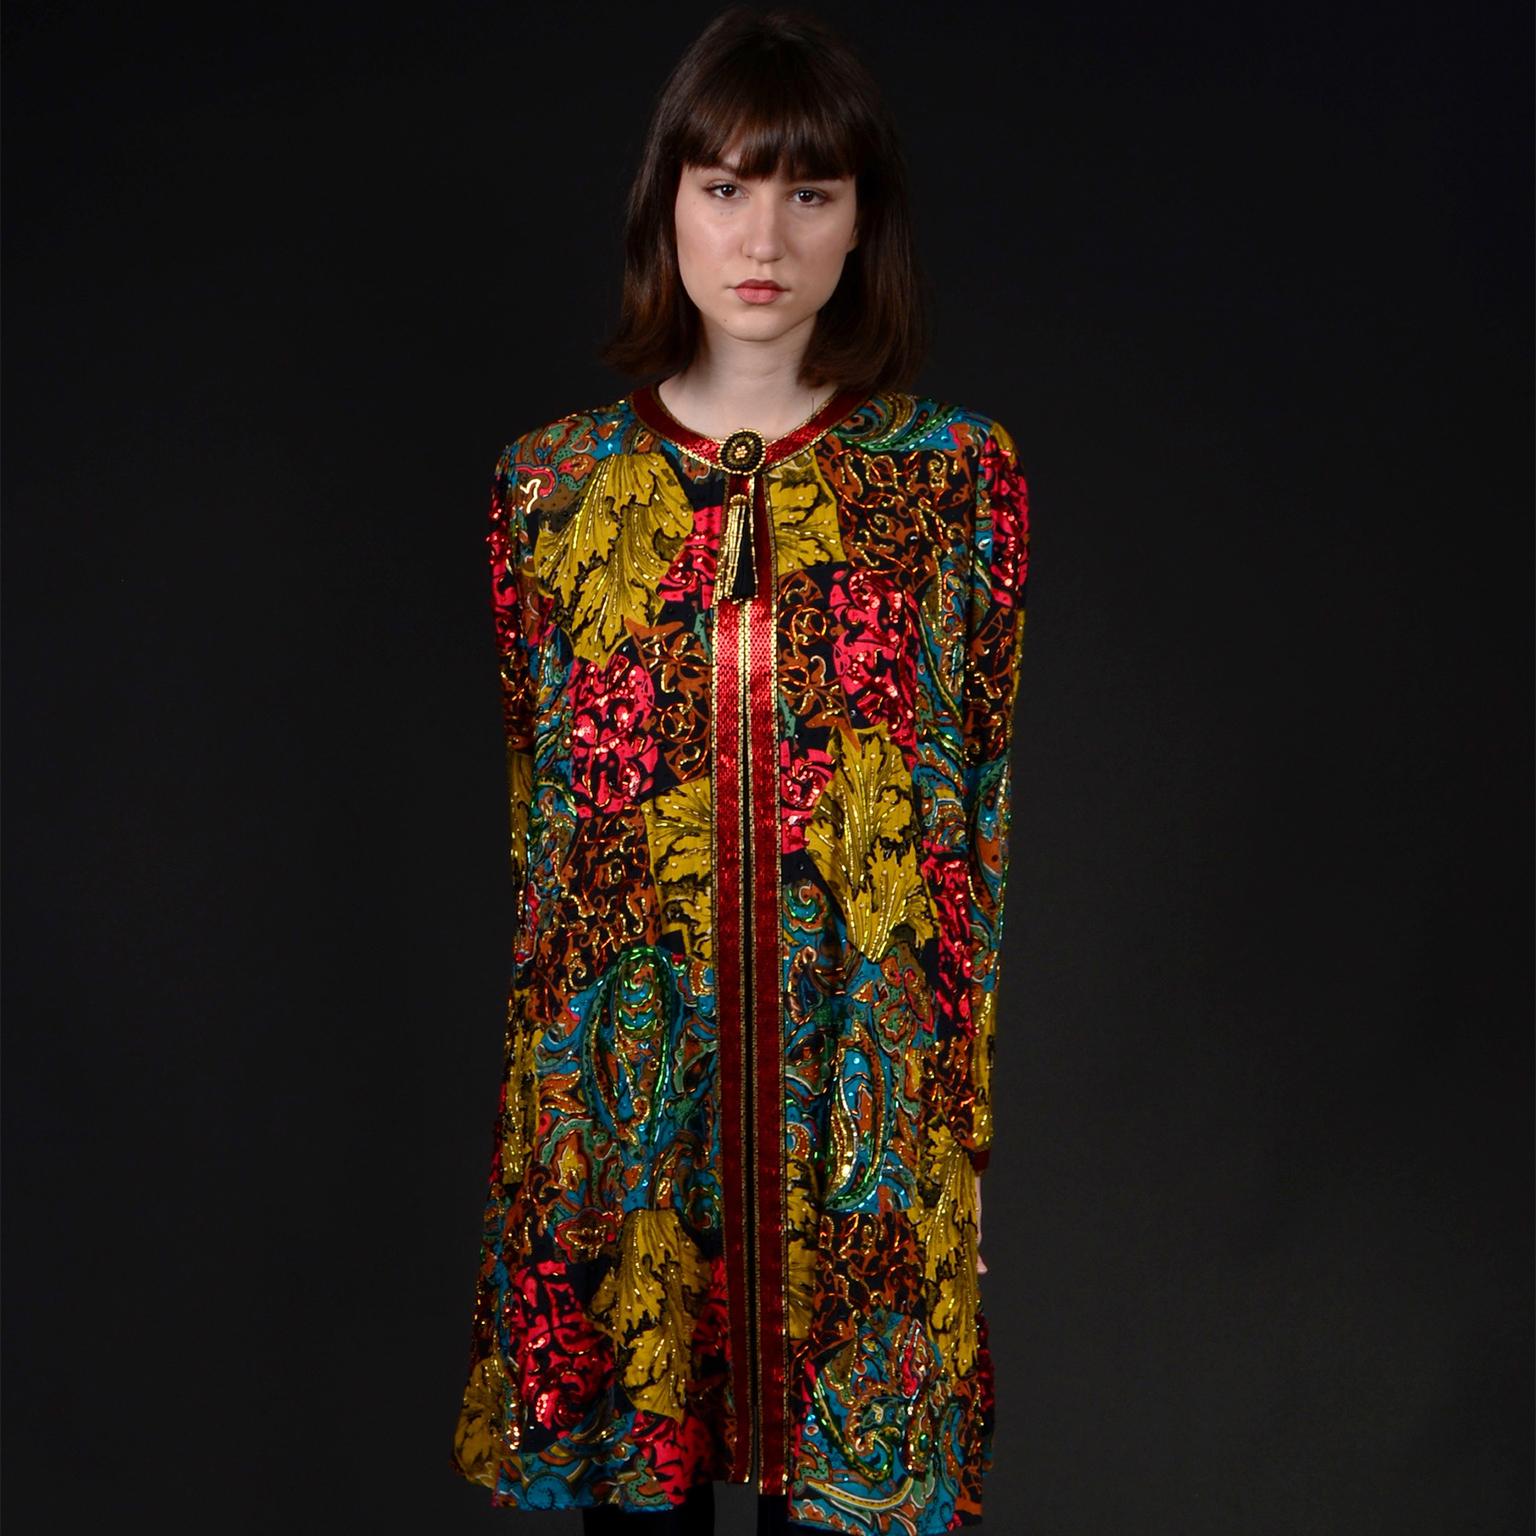 Brown Vintage Diane Freis Beaded Sequin Swing Jacket in Multi Colored Baroque Print